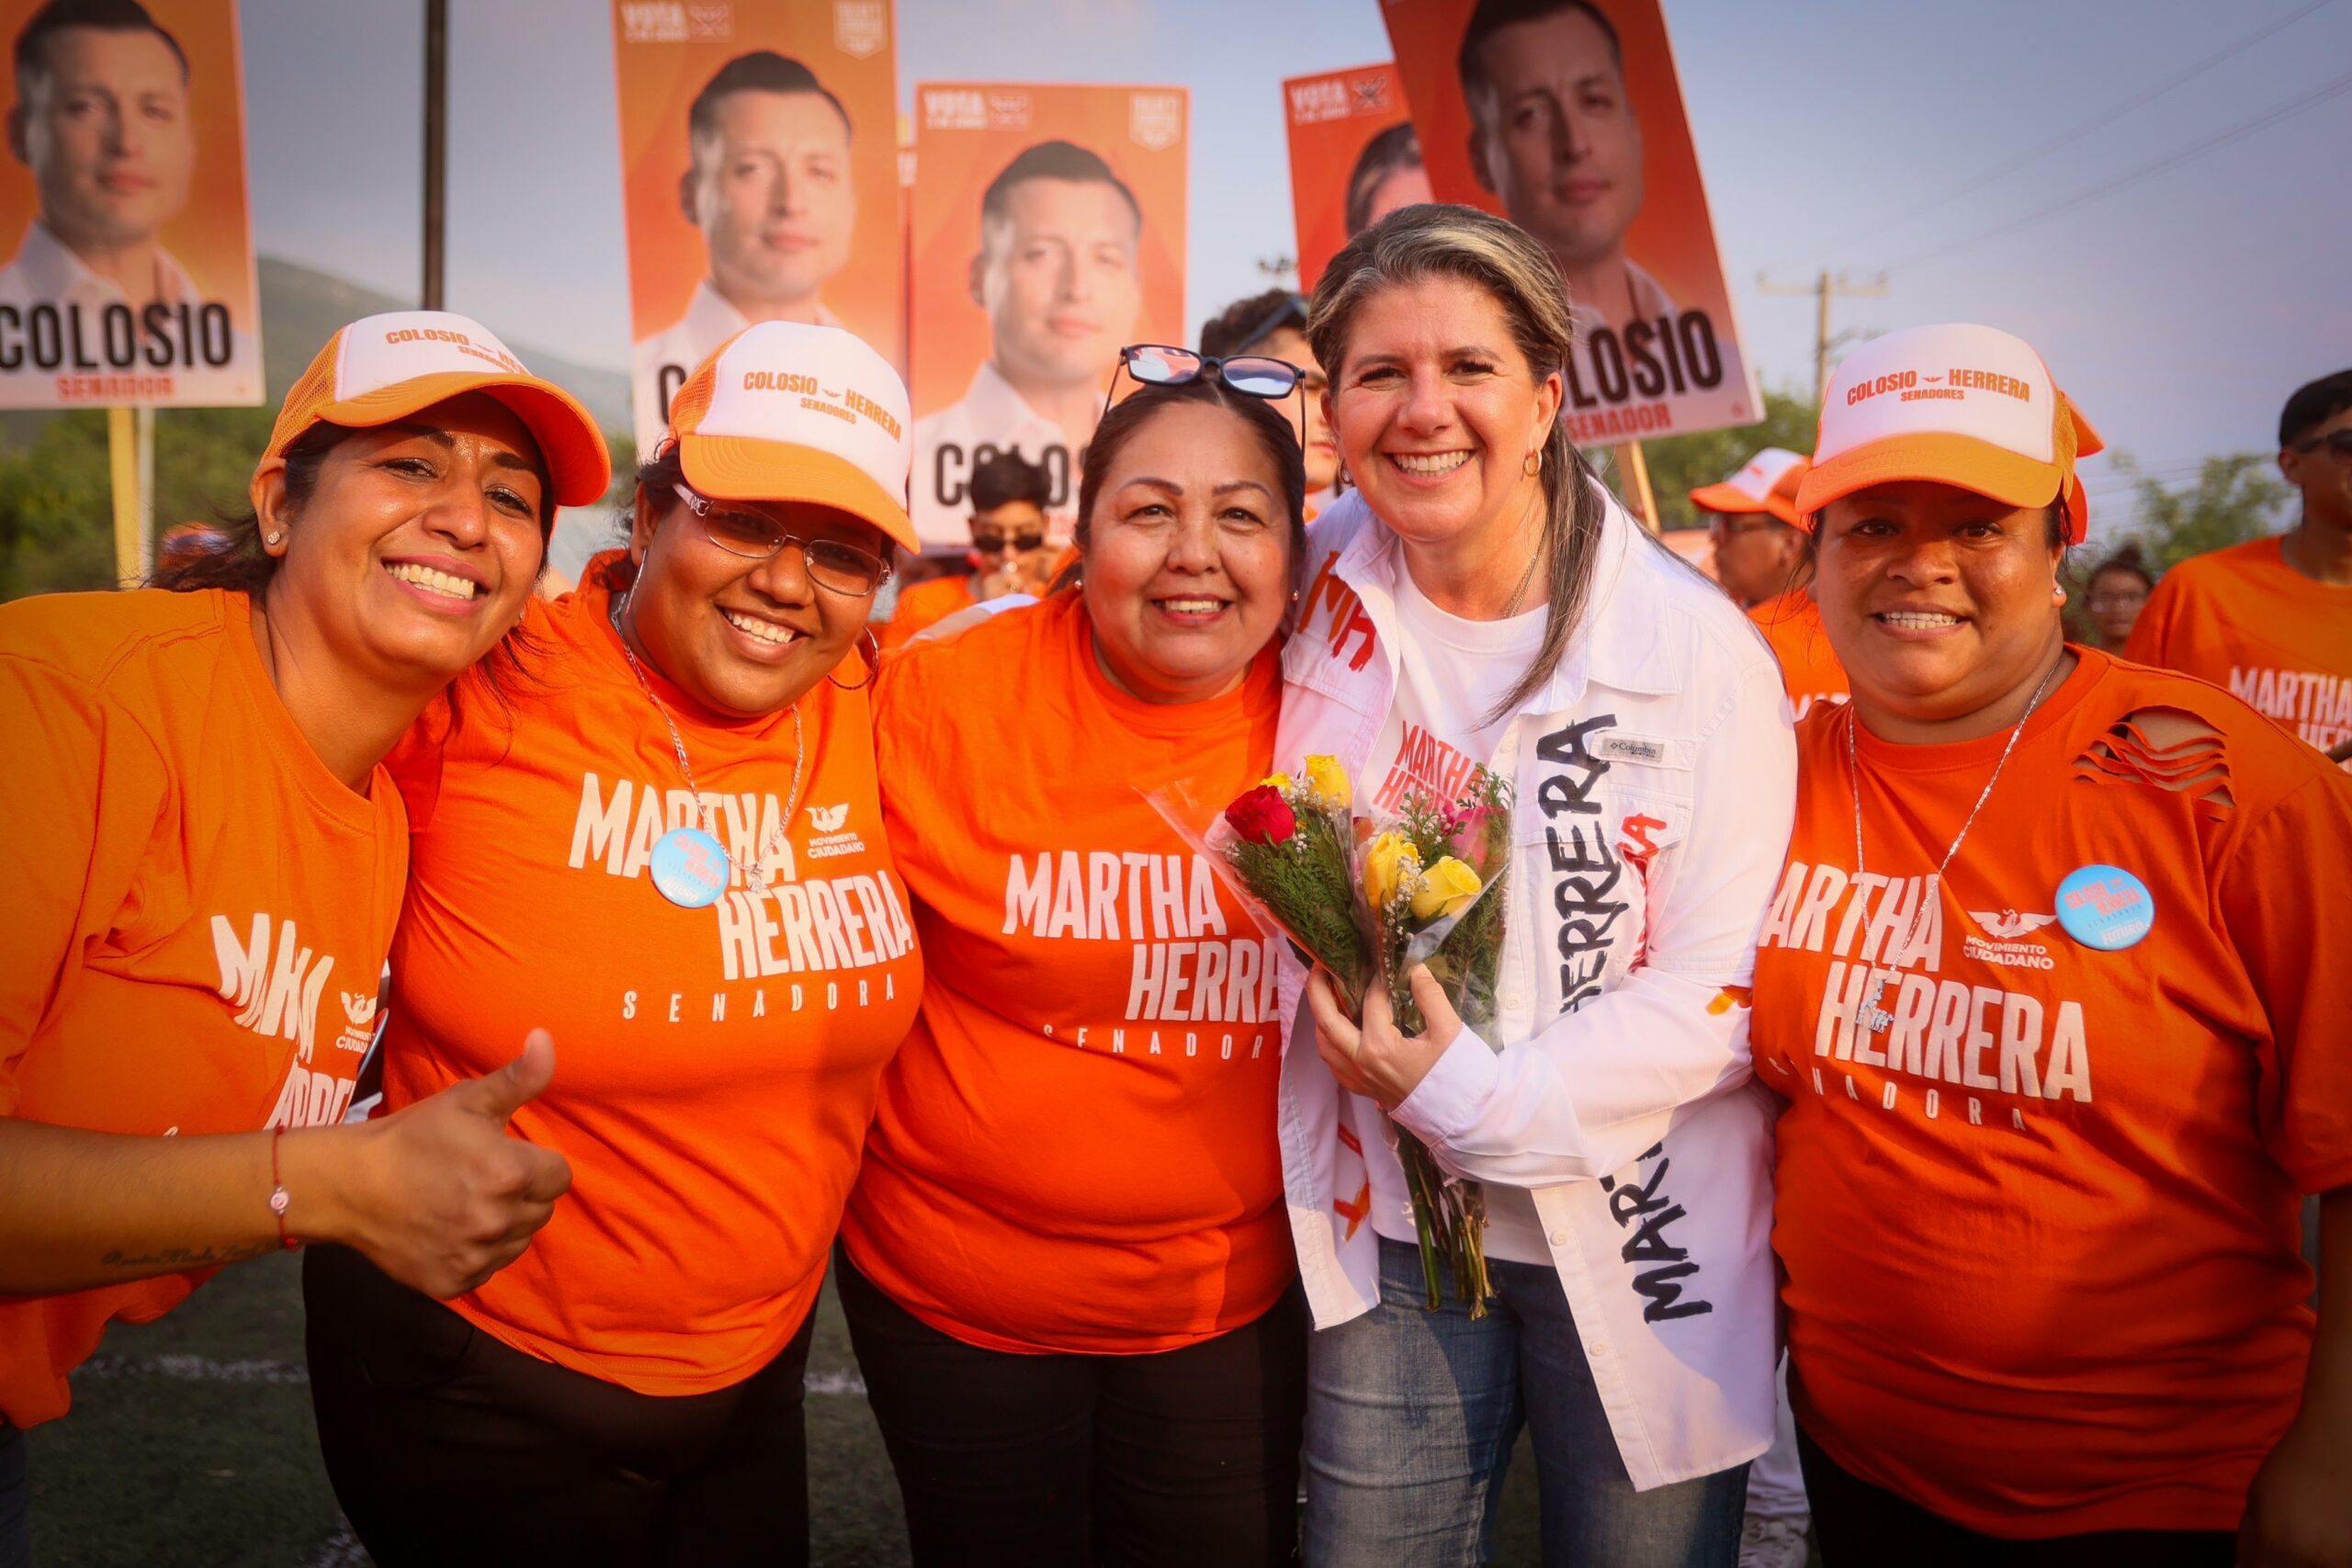 “Vamos por reformas que nos permitan ayudar de manera eficiente” Martha Herrera